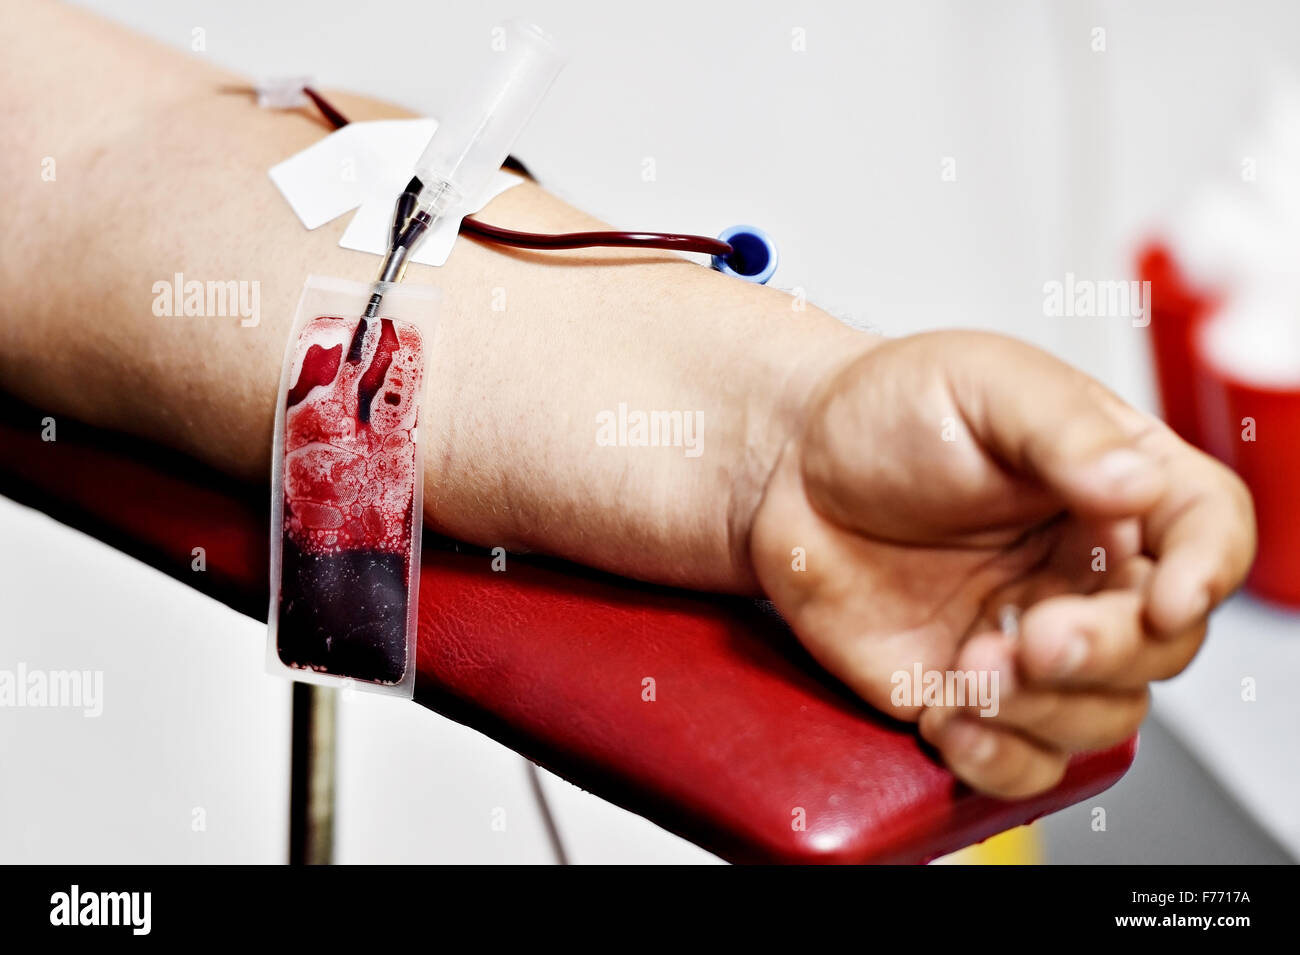 Détail de la main d'un don de sang et d'une poche de sang en plastique dans un hôpital Banque D'Images